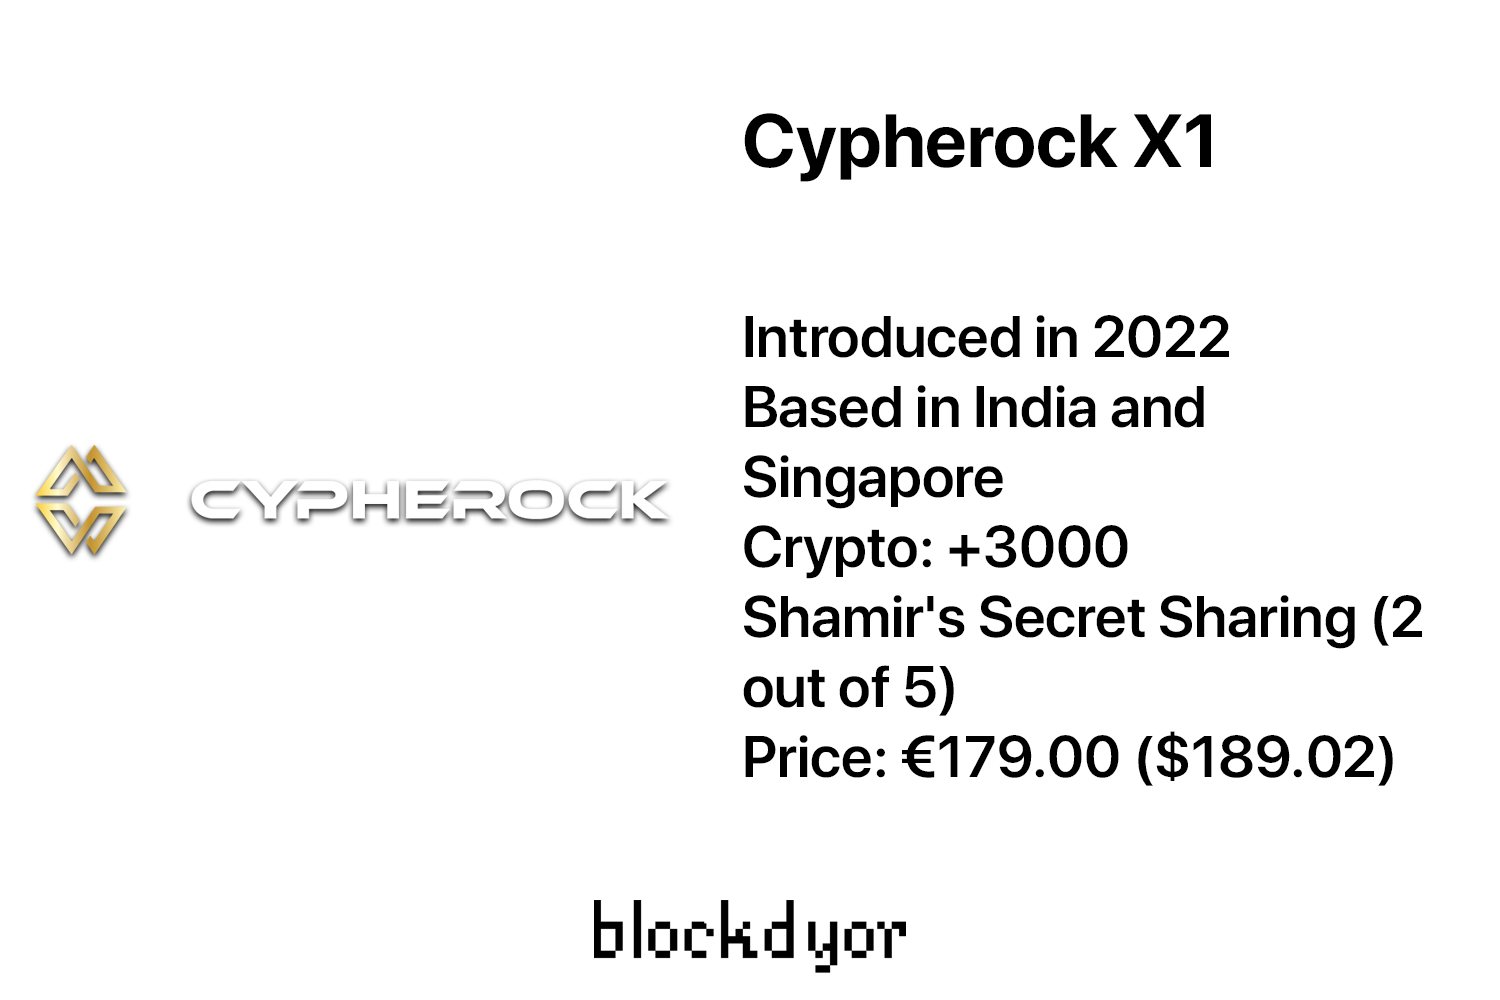 Cypherock X1 Overview